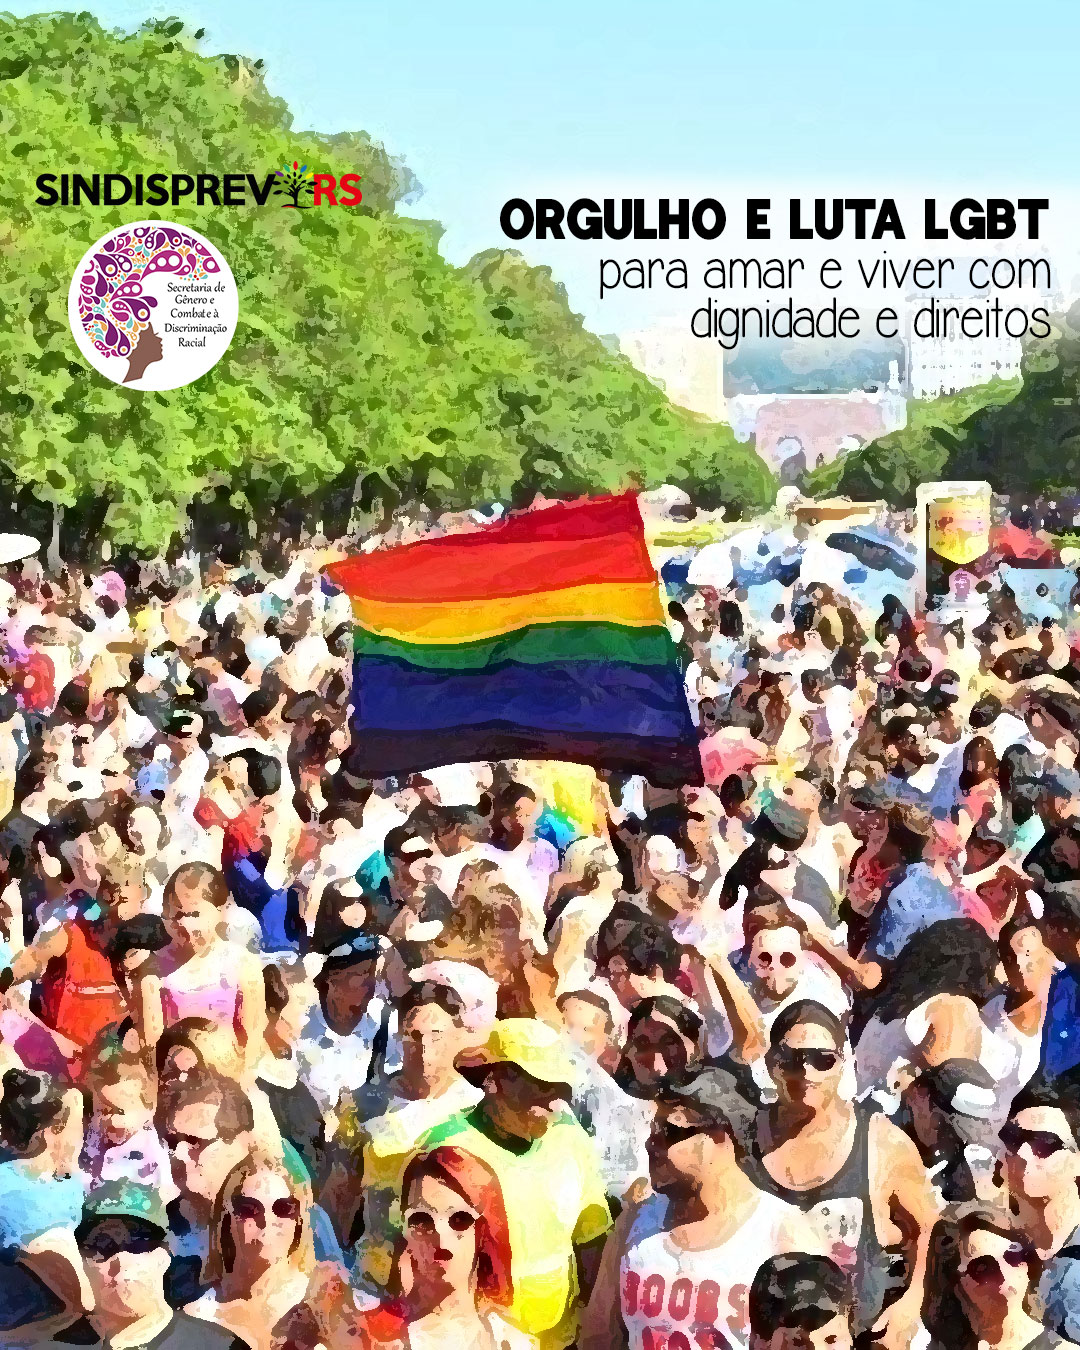  Orgulho e luta LGBT: para amar e viver com dignidade e direitos